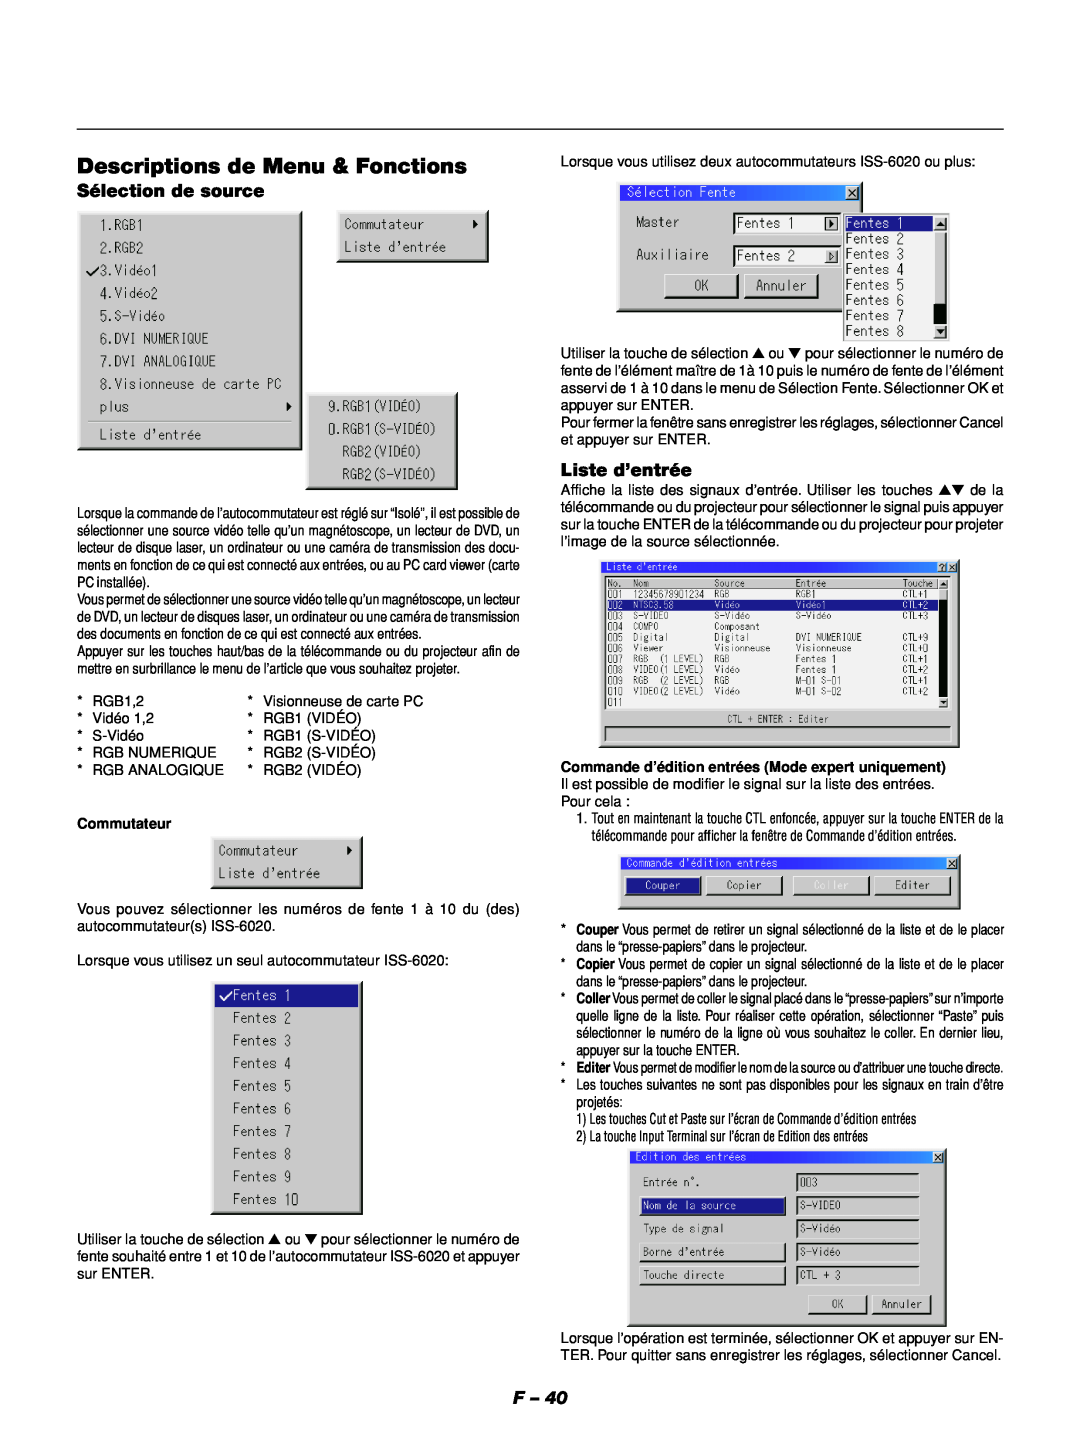 NEC GT1150 manuel dutilisation Descriptions de Menu & Fonctions, Sélection de source, Liste d’entrée, Commutateur 